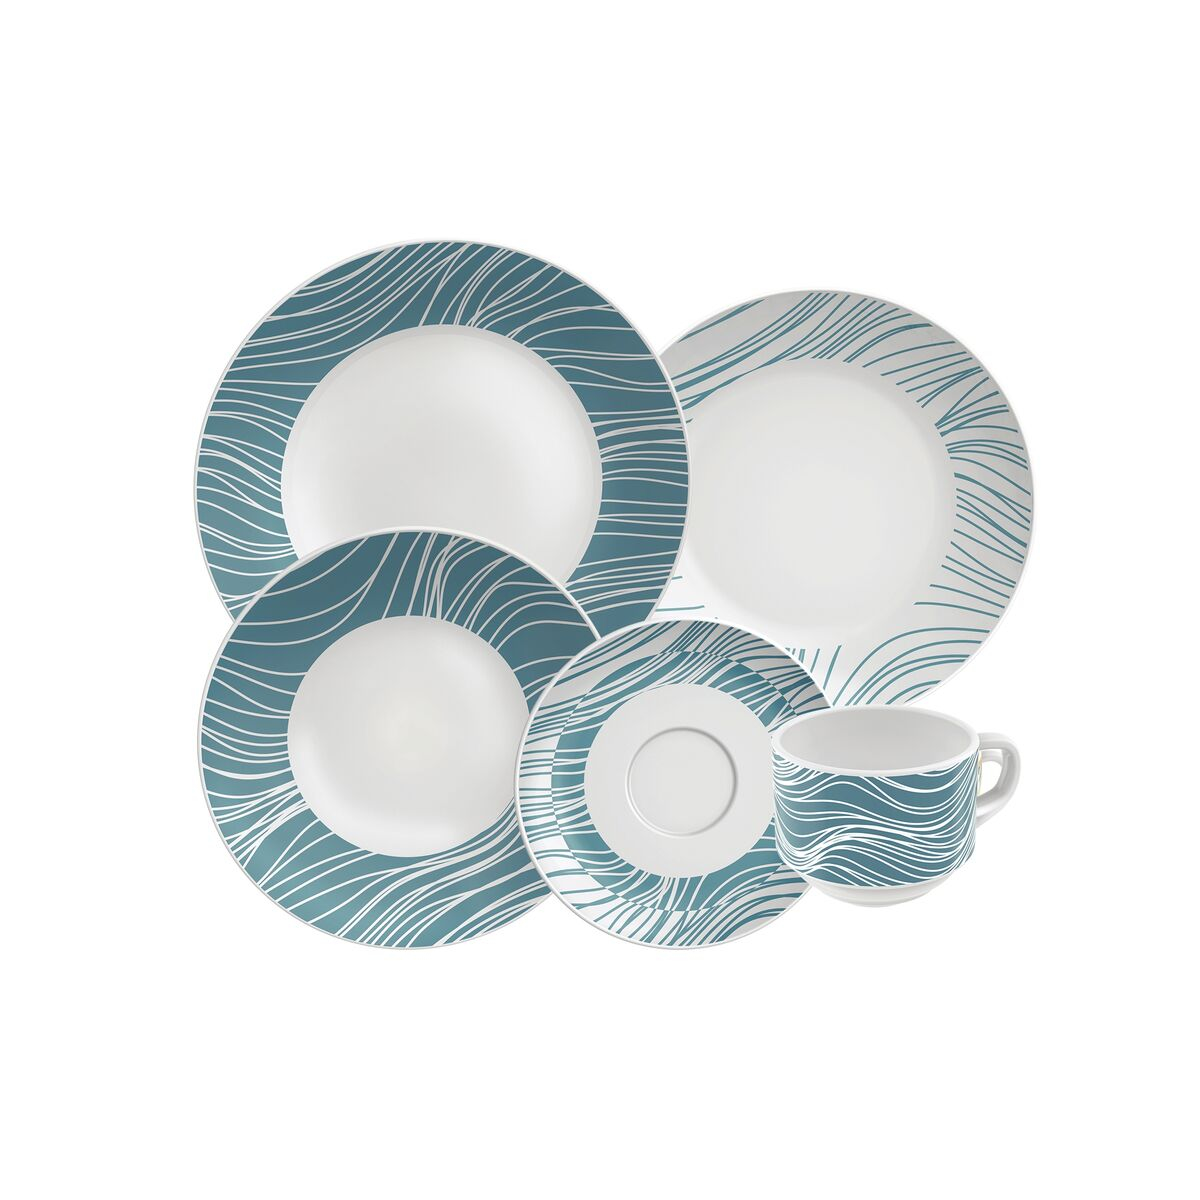 Tramontina Clarice Underglaze Porcelain Dinnerware 20 piece